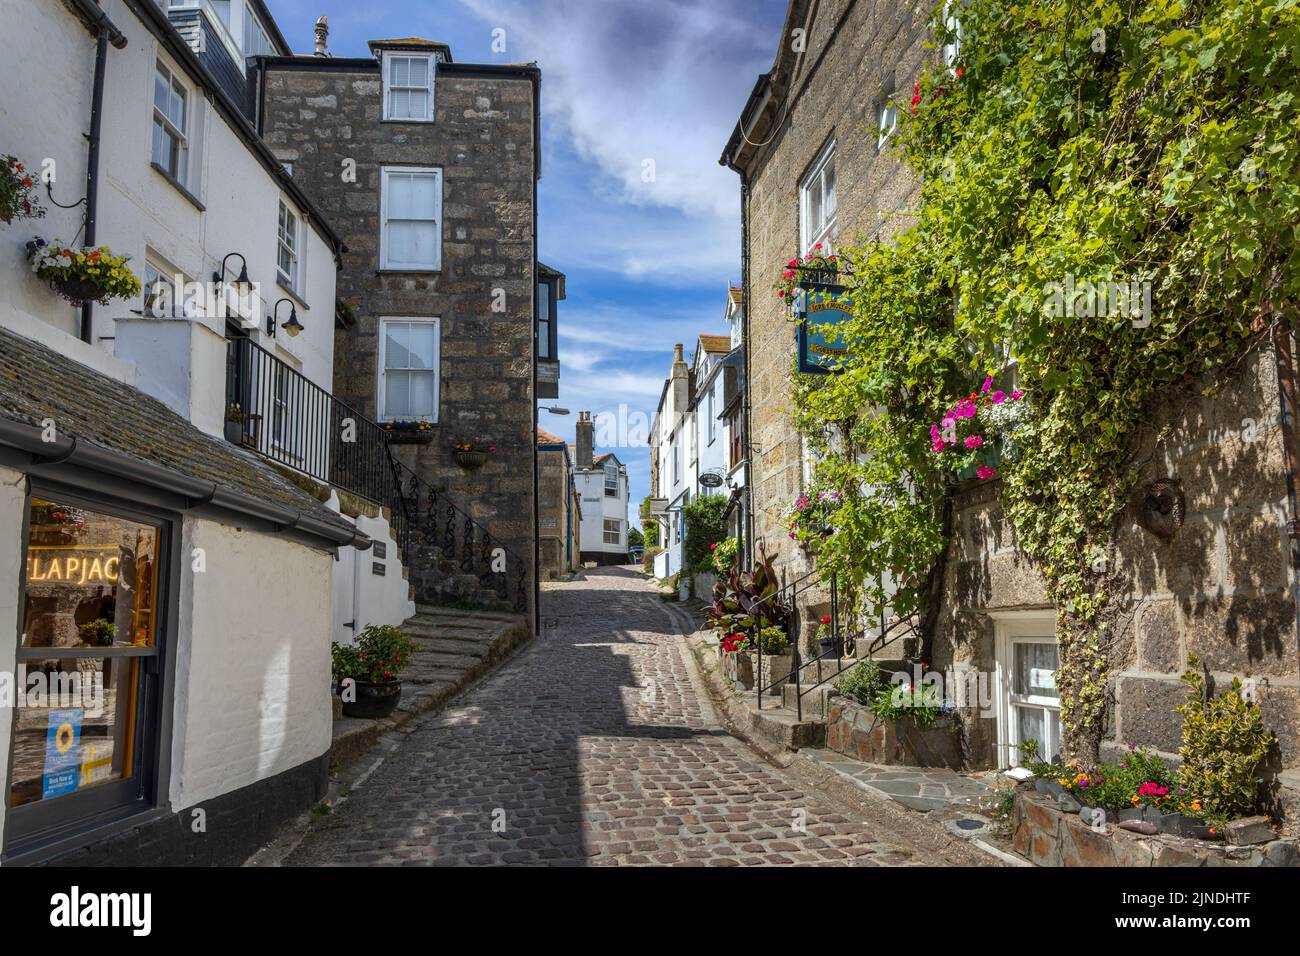 La pittoresque rue pavée de Bunkers Hill à St Ives, Cornouailles, Angleterre. Banque D'Images